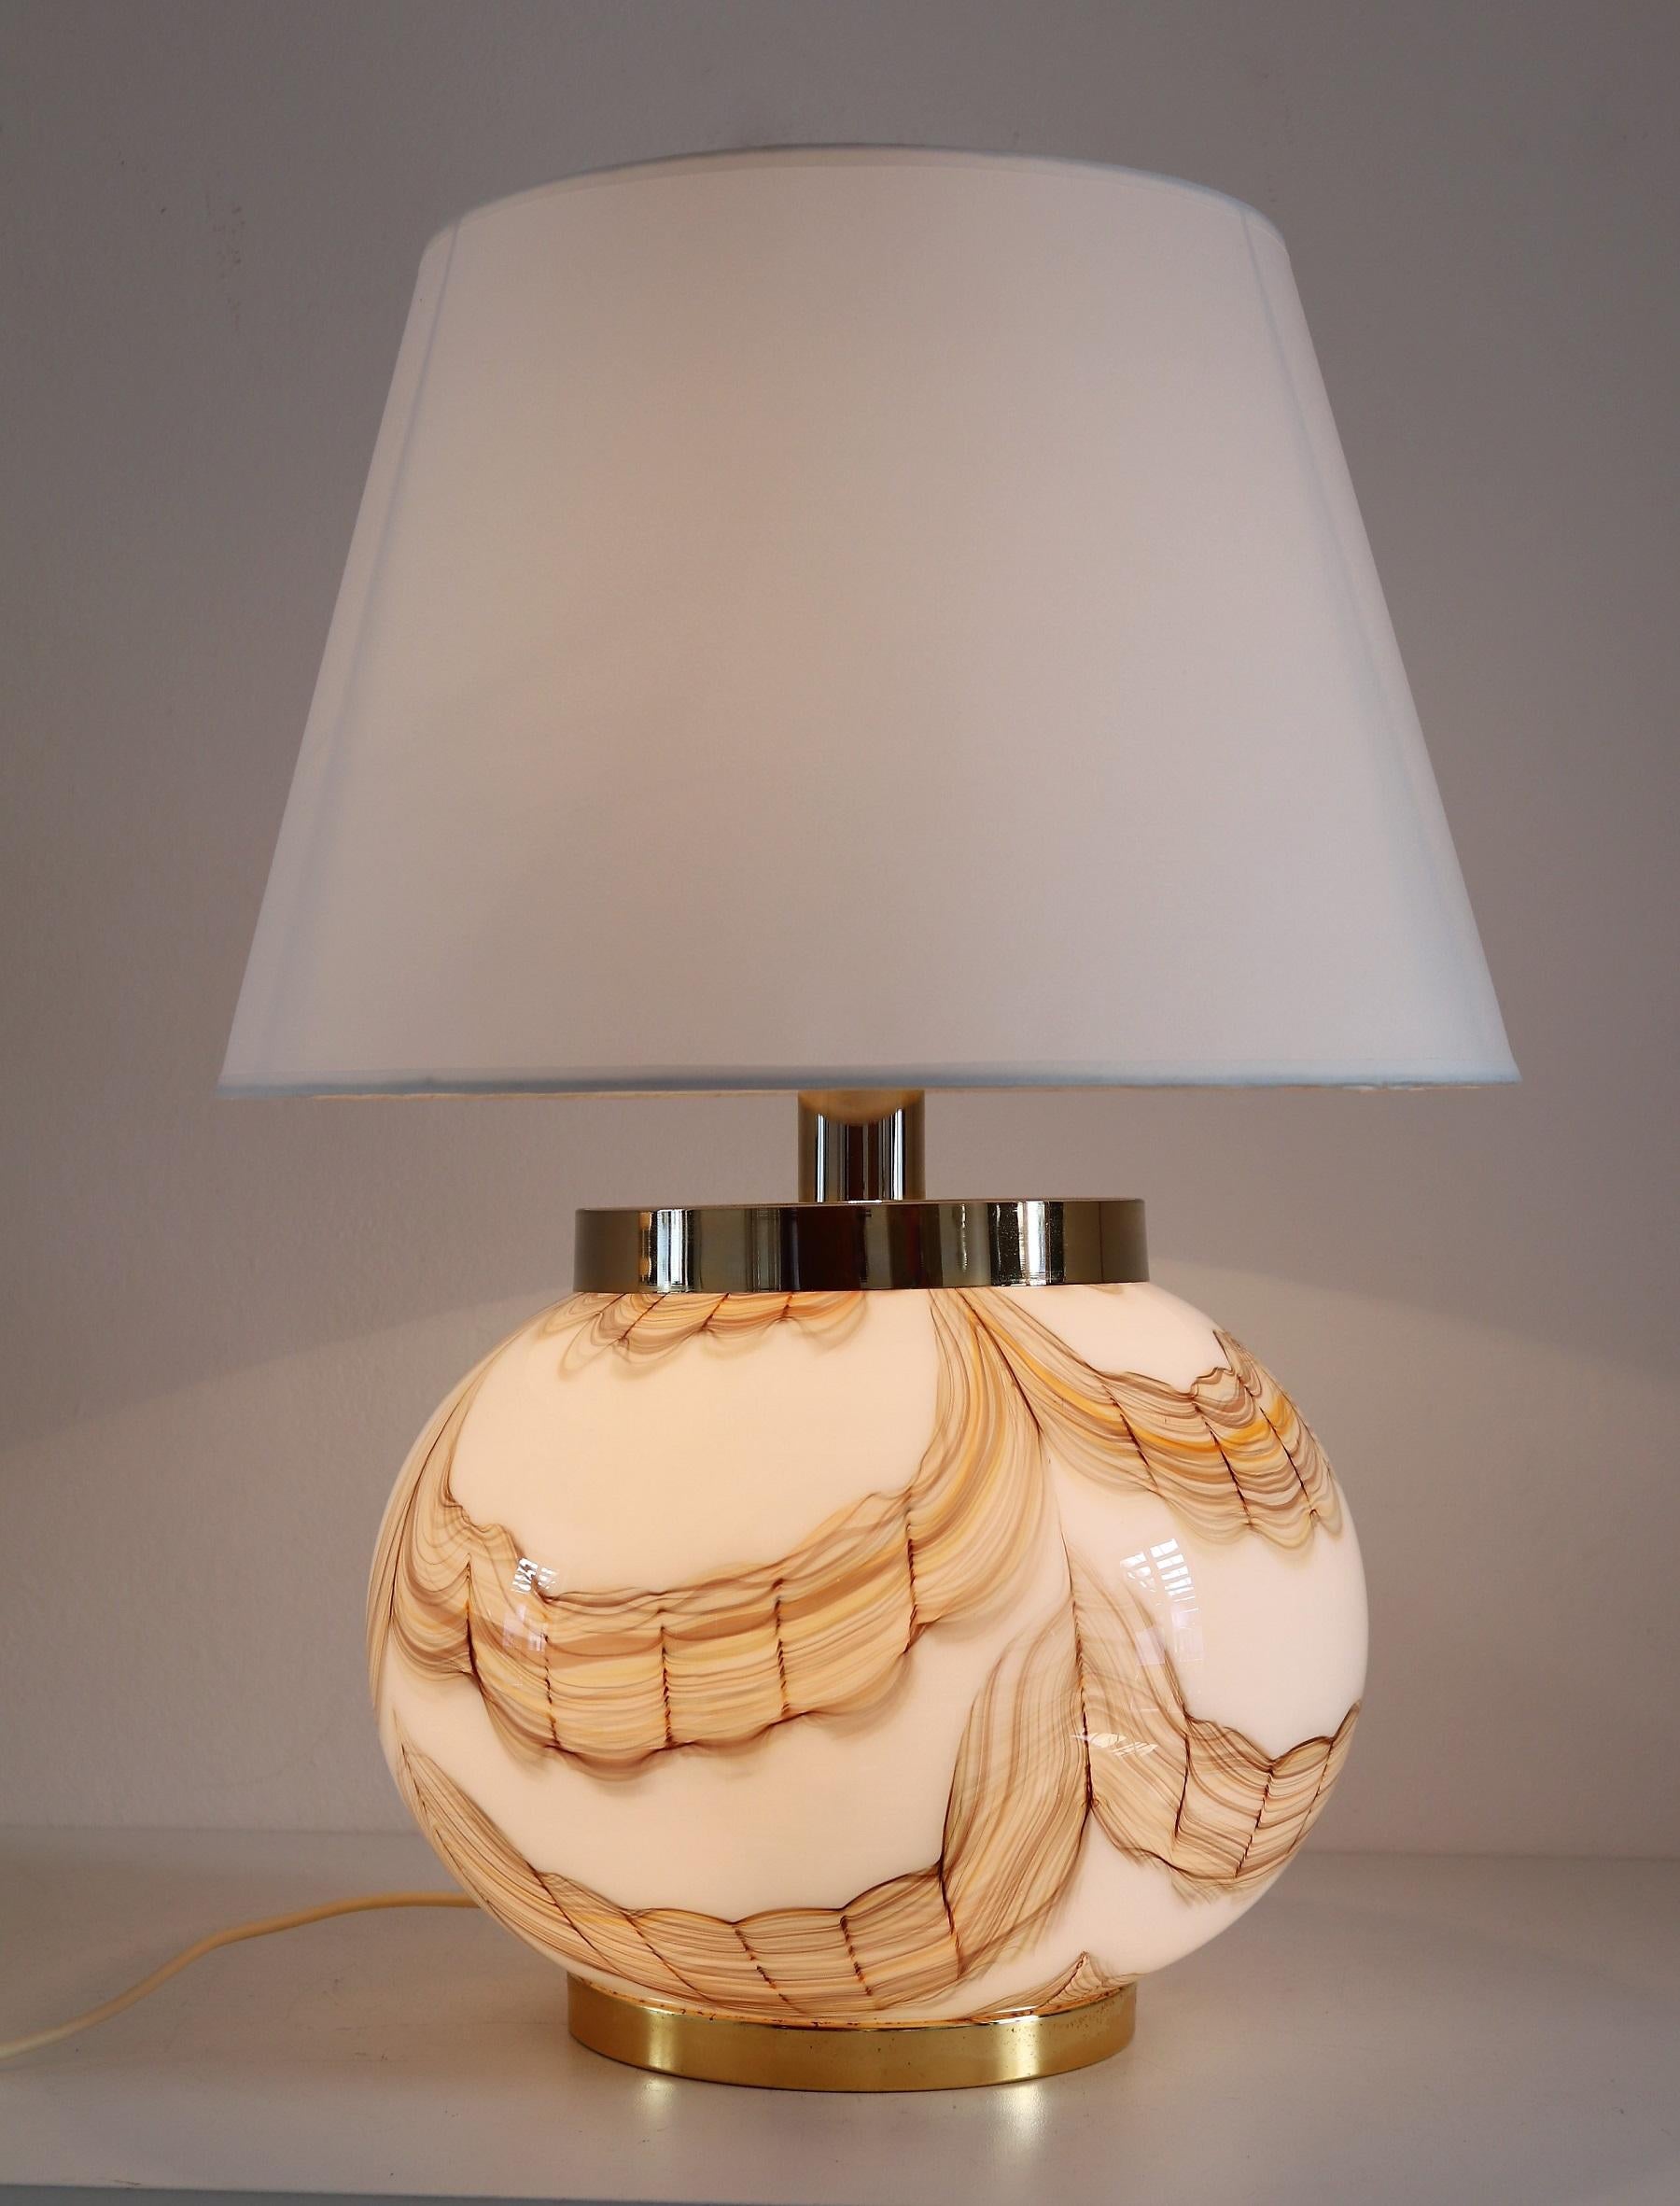 Wunderschöne italienische Tischlampe mit großem Muranoglas-Sockel und goldenen Metalldetails.
Hergestellt in Murano in den 1970er Jahren.
Das Glas ist mit seinen verschiedenen Farbnuancen von verschiedenen Brauntönen über Orange bis hin zu Gelb